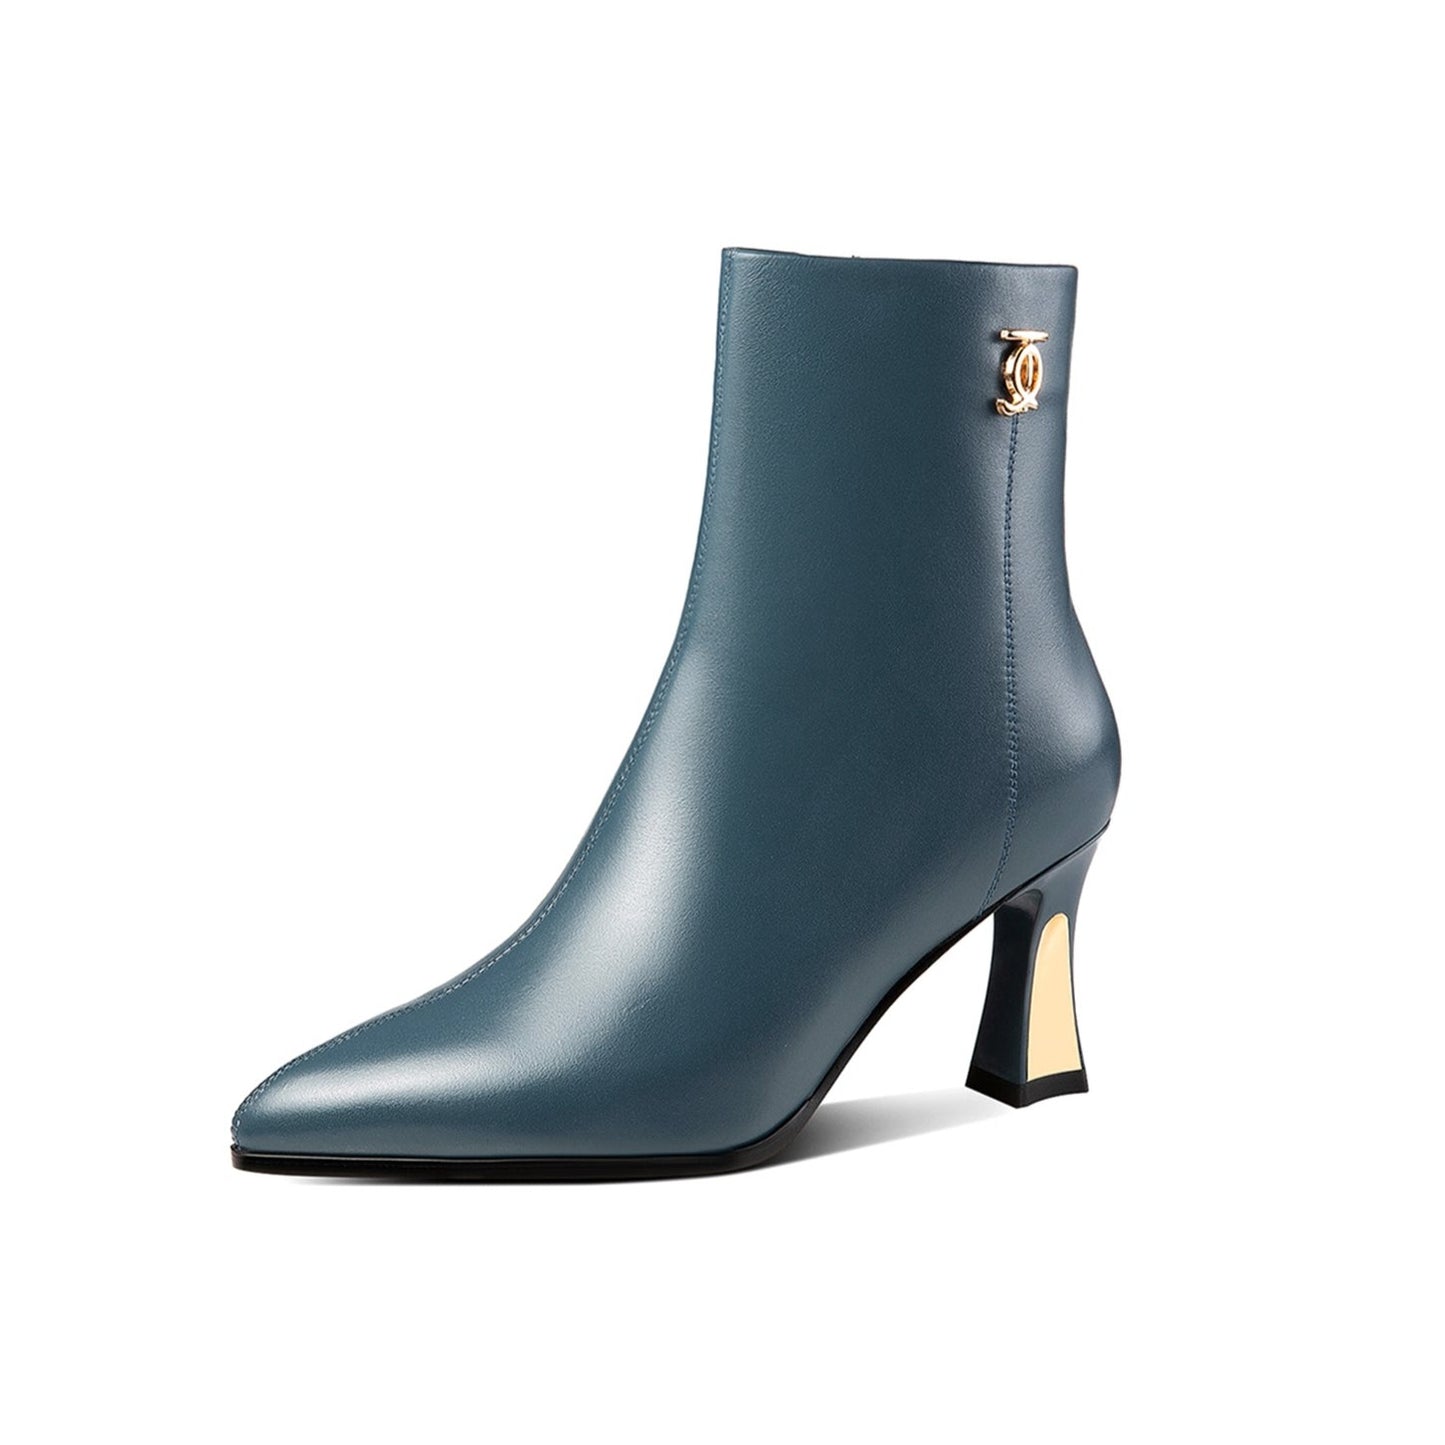 TinaCus Women's Handmade Genuine Leather Side Zip Up Mid Heel Pointed Toe Elegant Ankle Booties